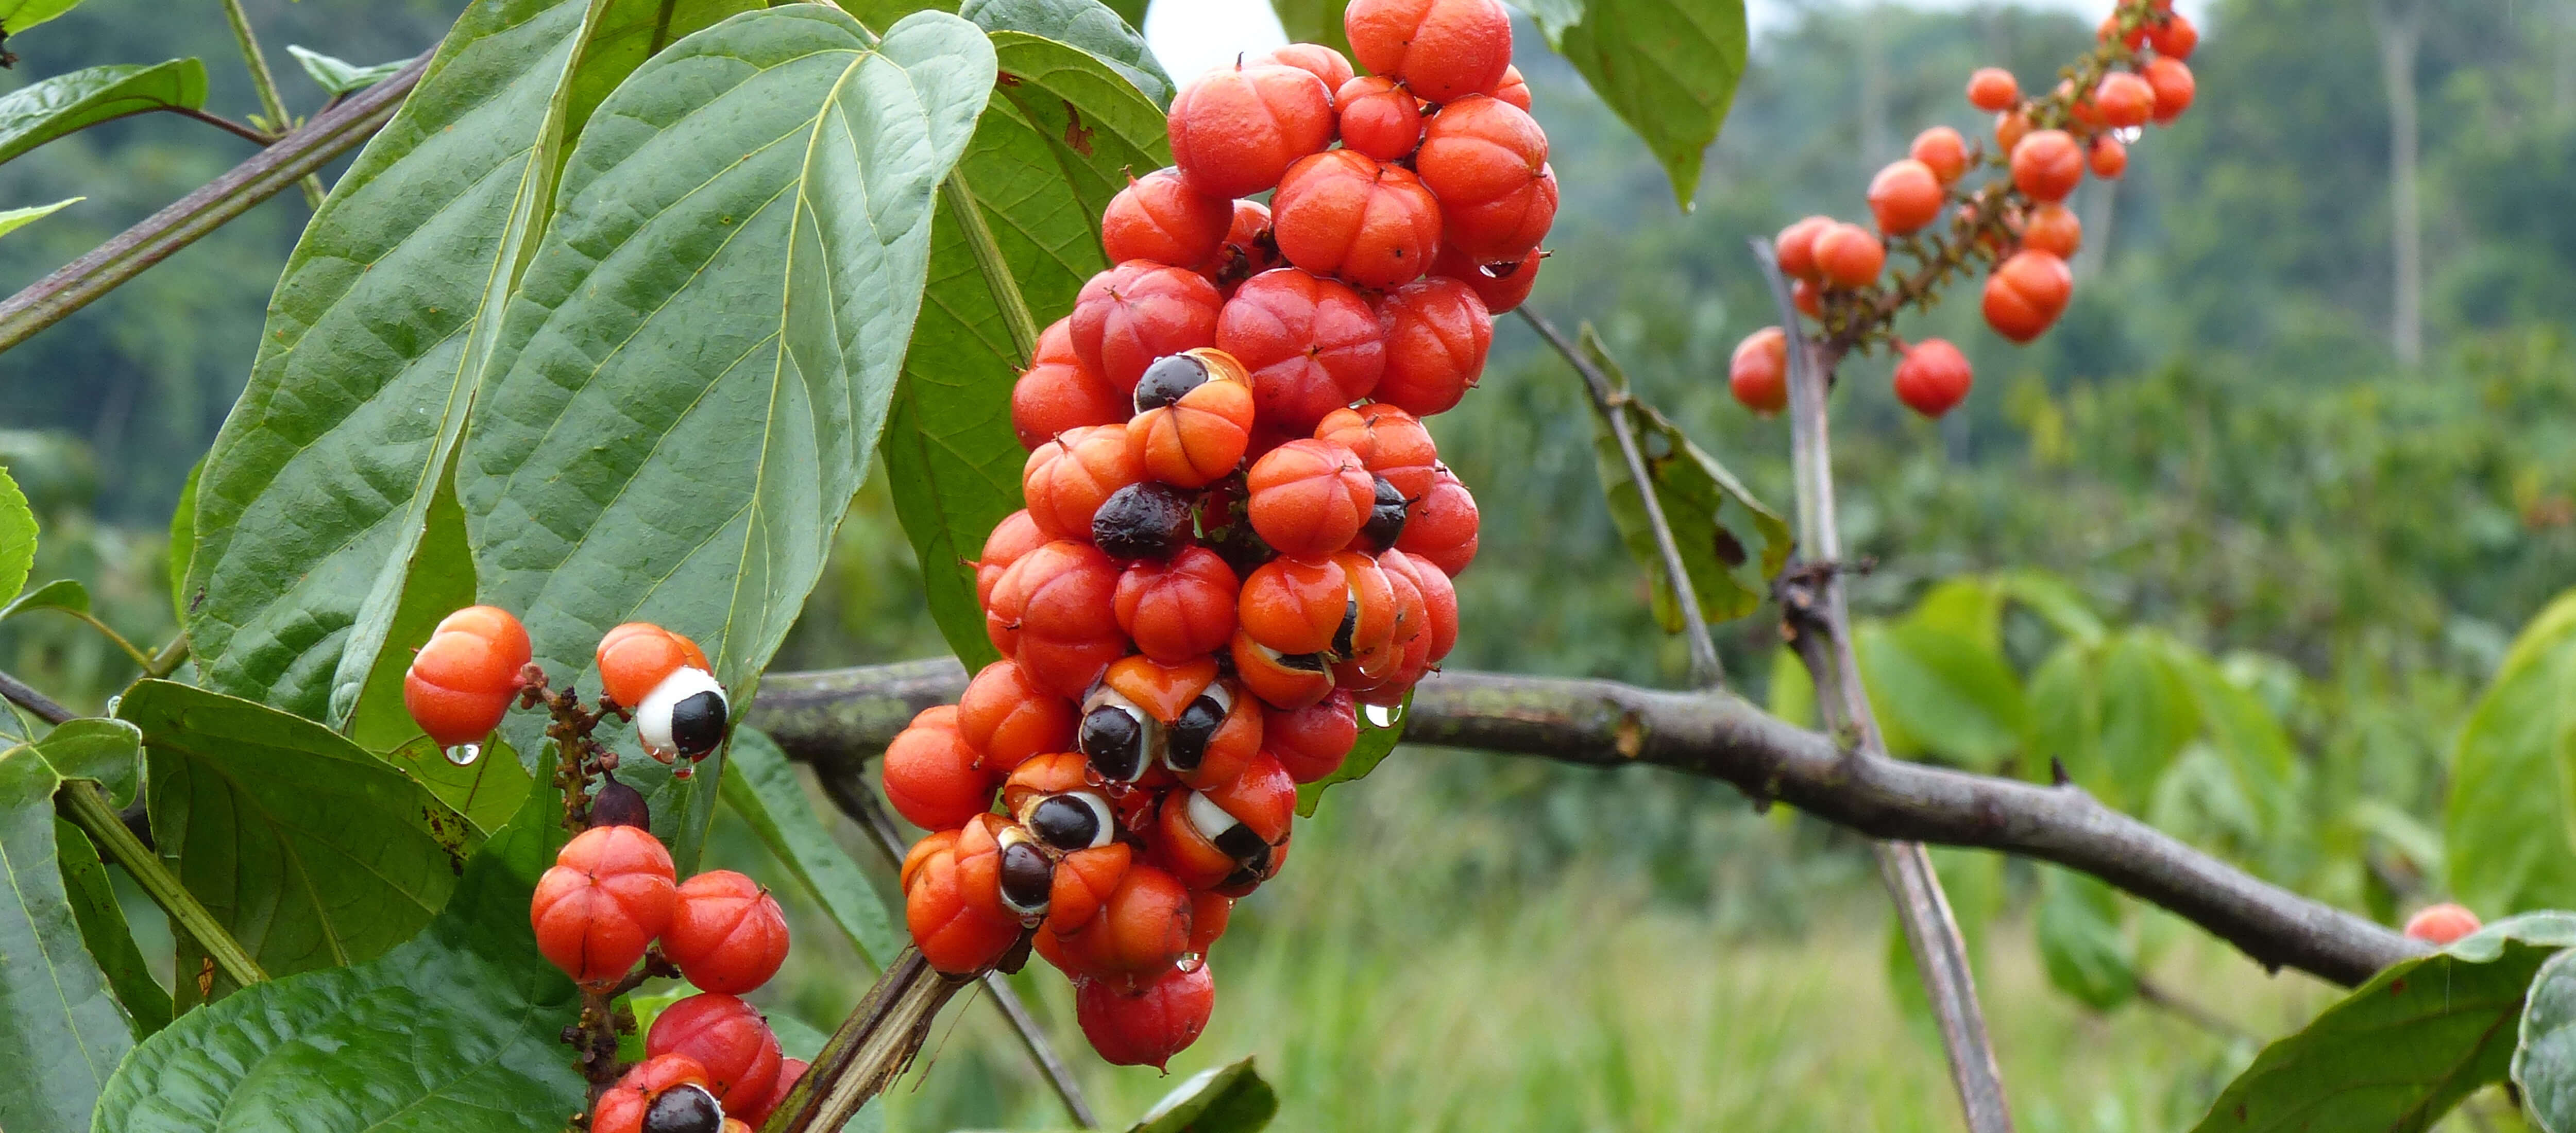 Guarana - Natürliches Koffein aus dem Amazonas-Regenwald